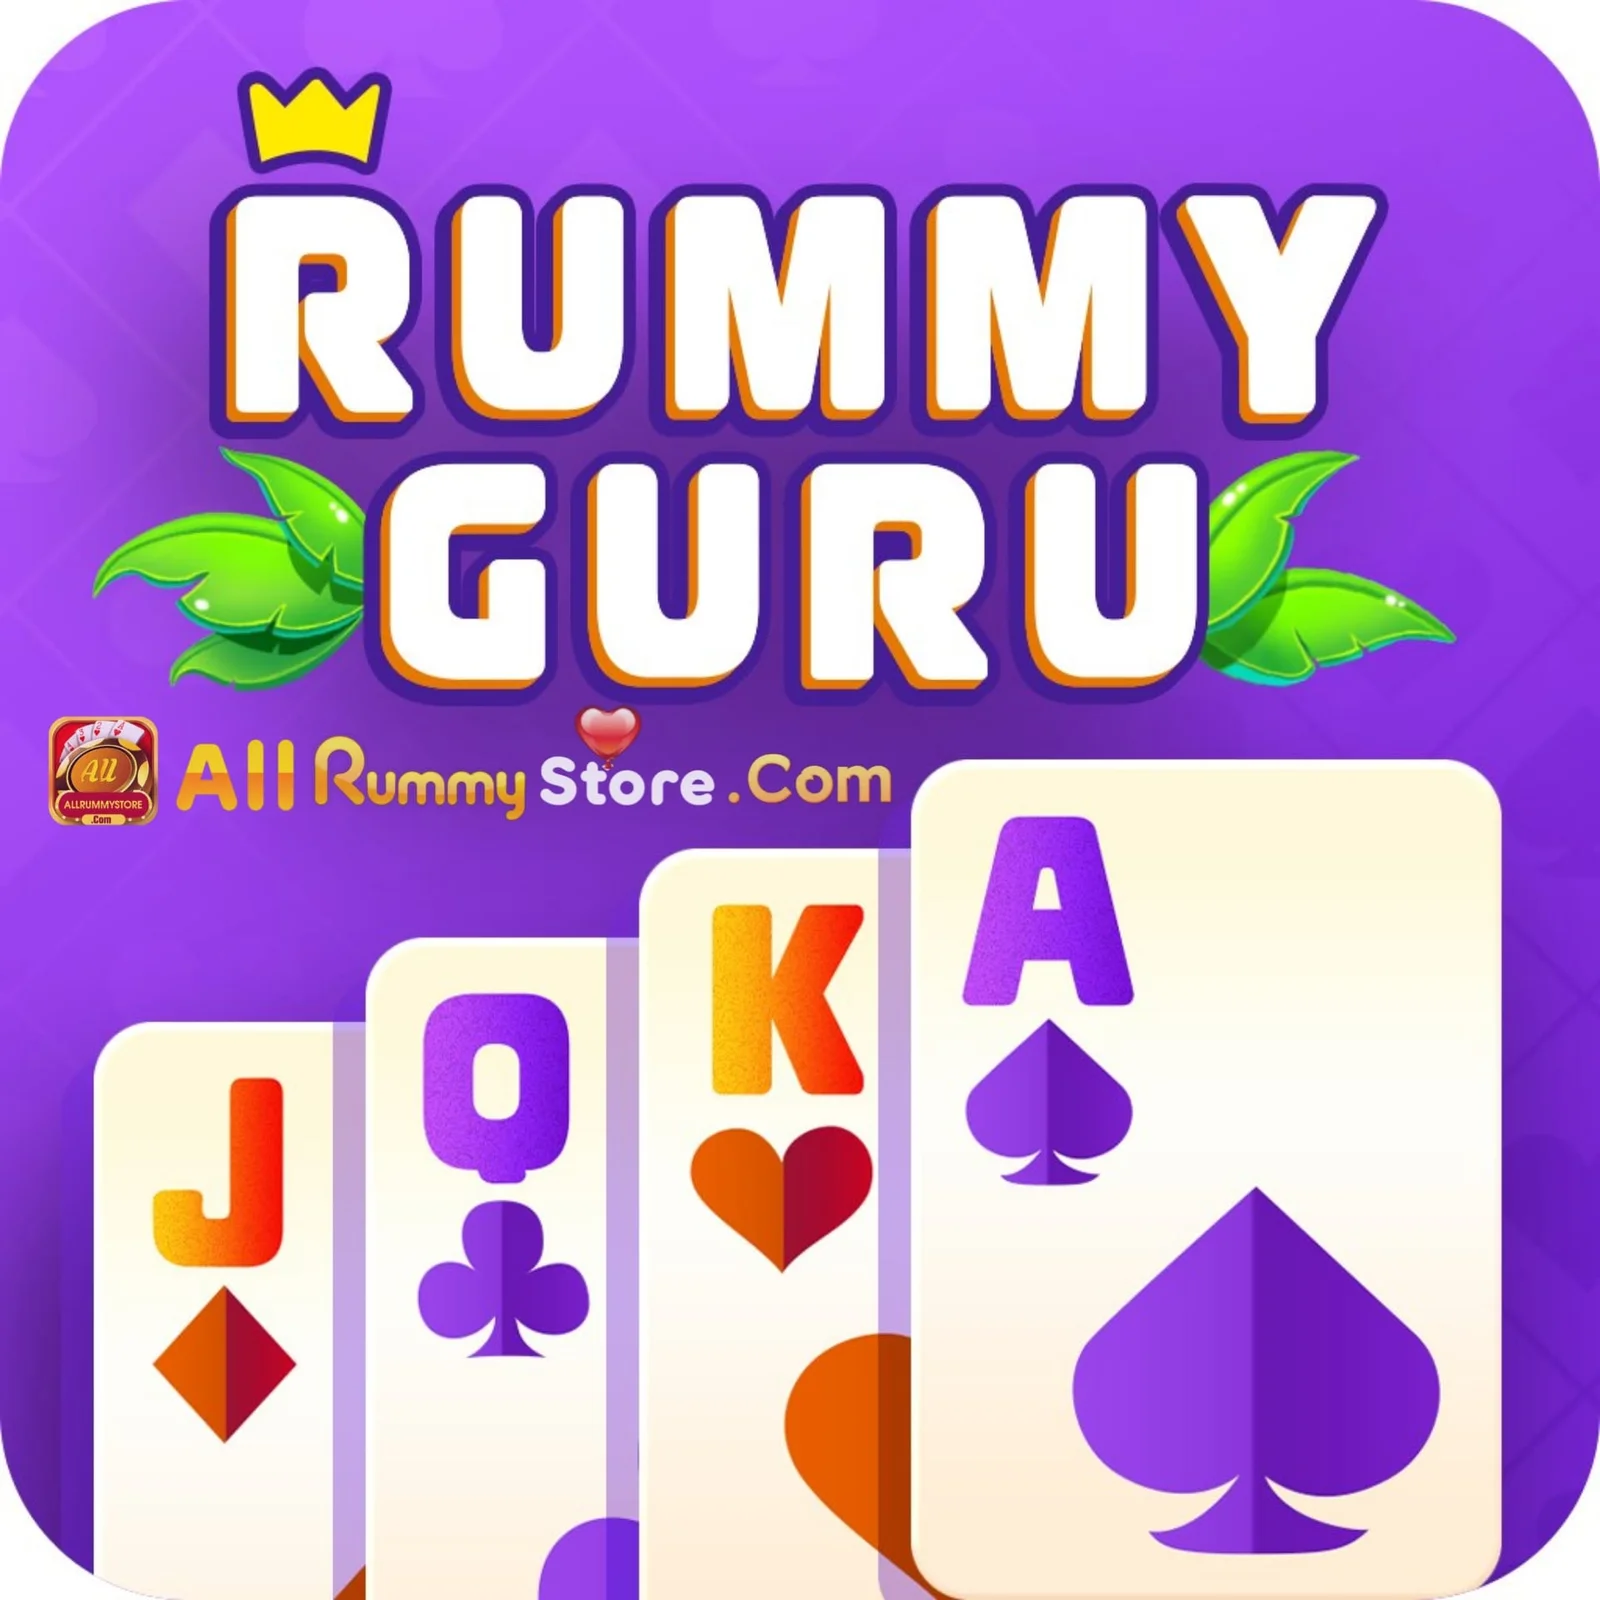 Rummy Guru - All Rummy App - All Rummy Apps - RummyBonusApp